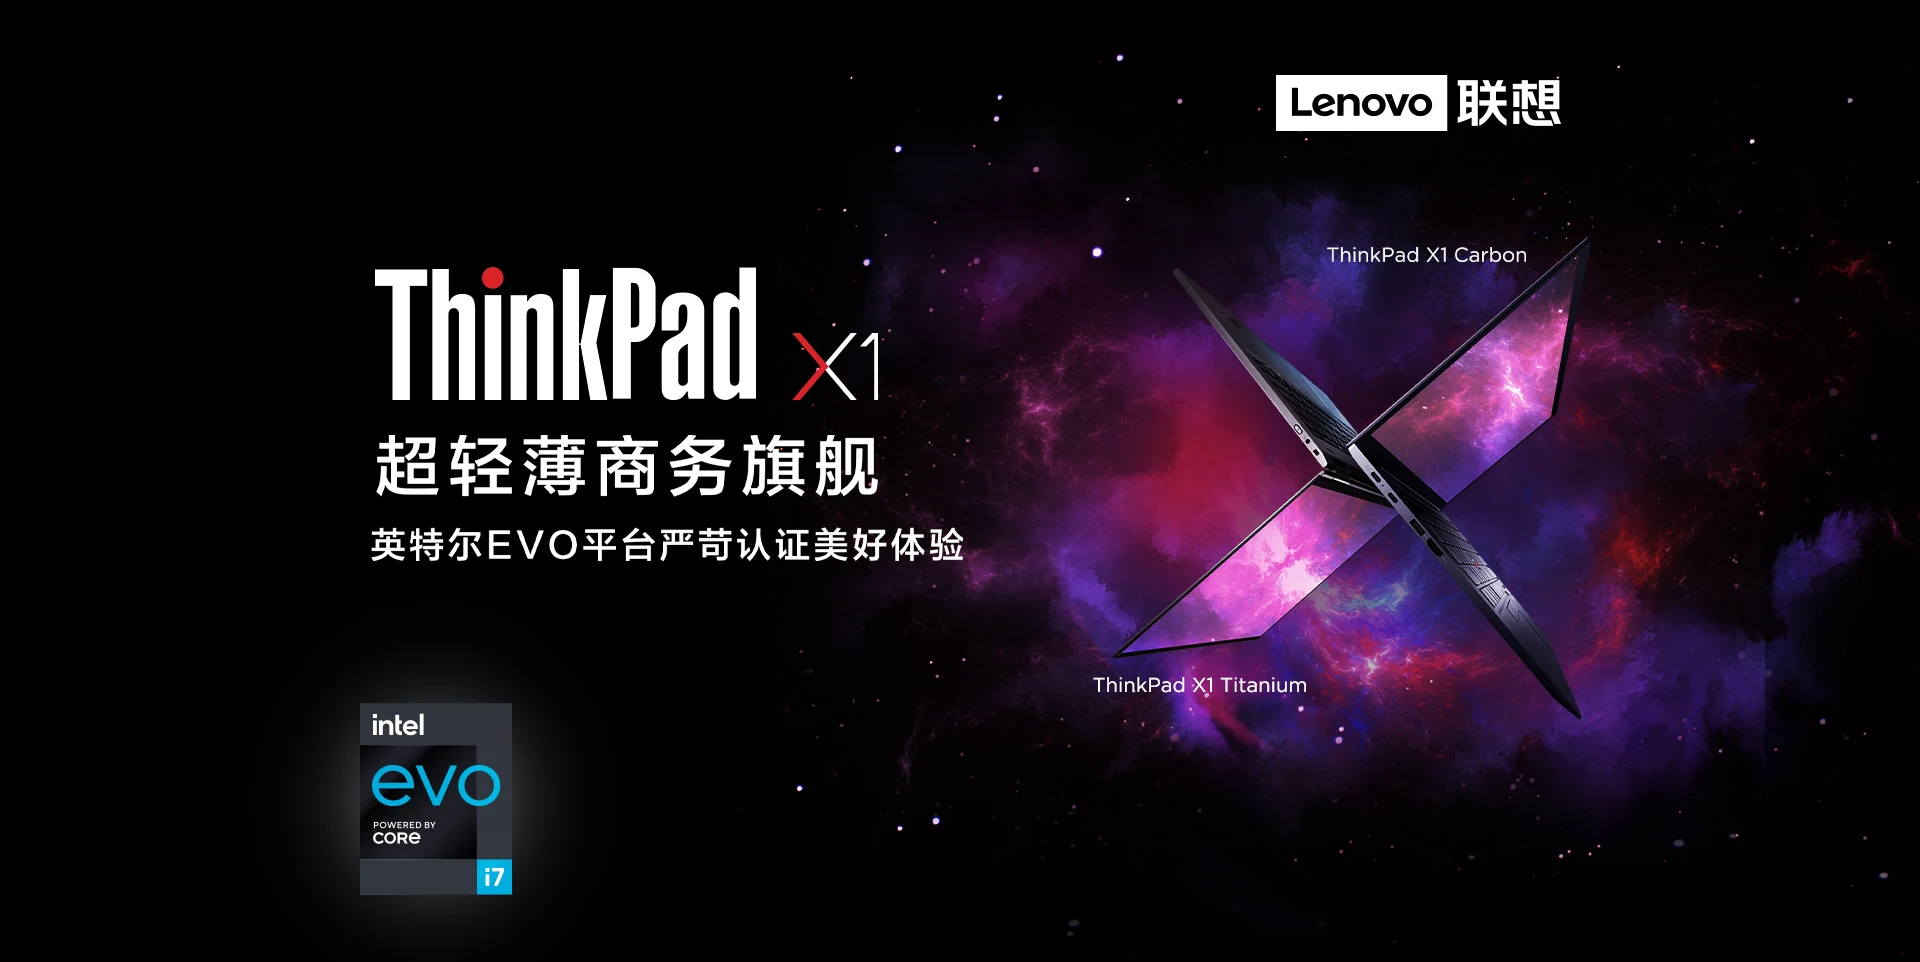 7999-19999 元，联想 ThinkPad X1 Carbon 2021 等一系列笔电明日正式开售